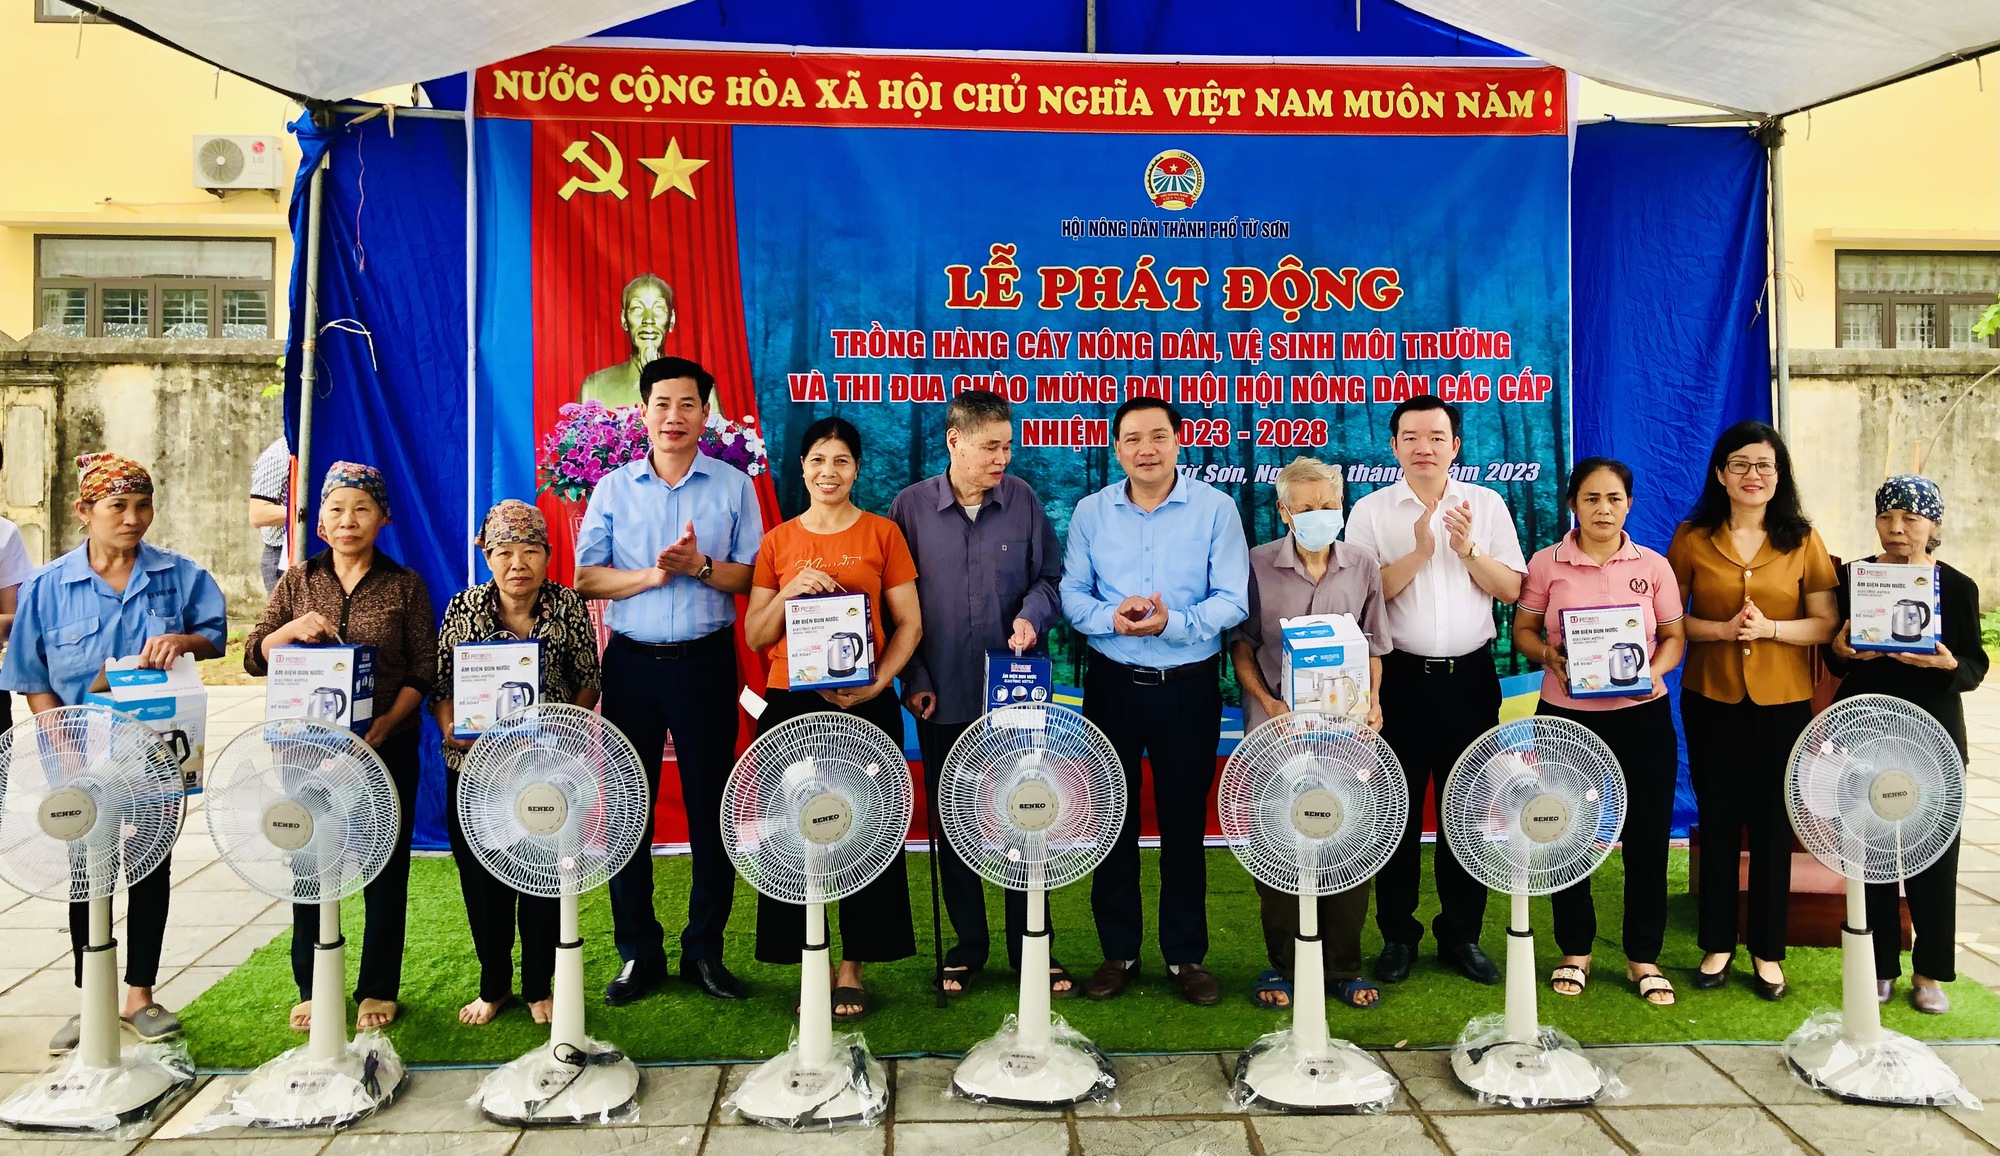 Bắc Ninh: Hội Nông dân thành phố Từ Sơn phát động trồng Hàng cây nông dân - Ảnh 3.